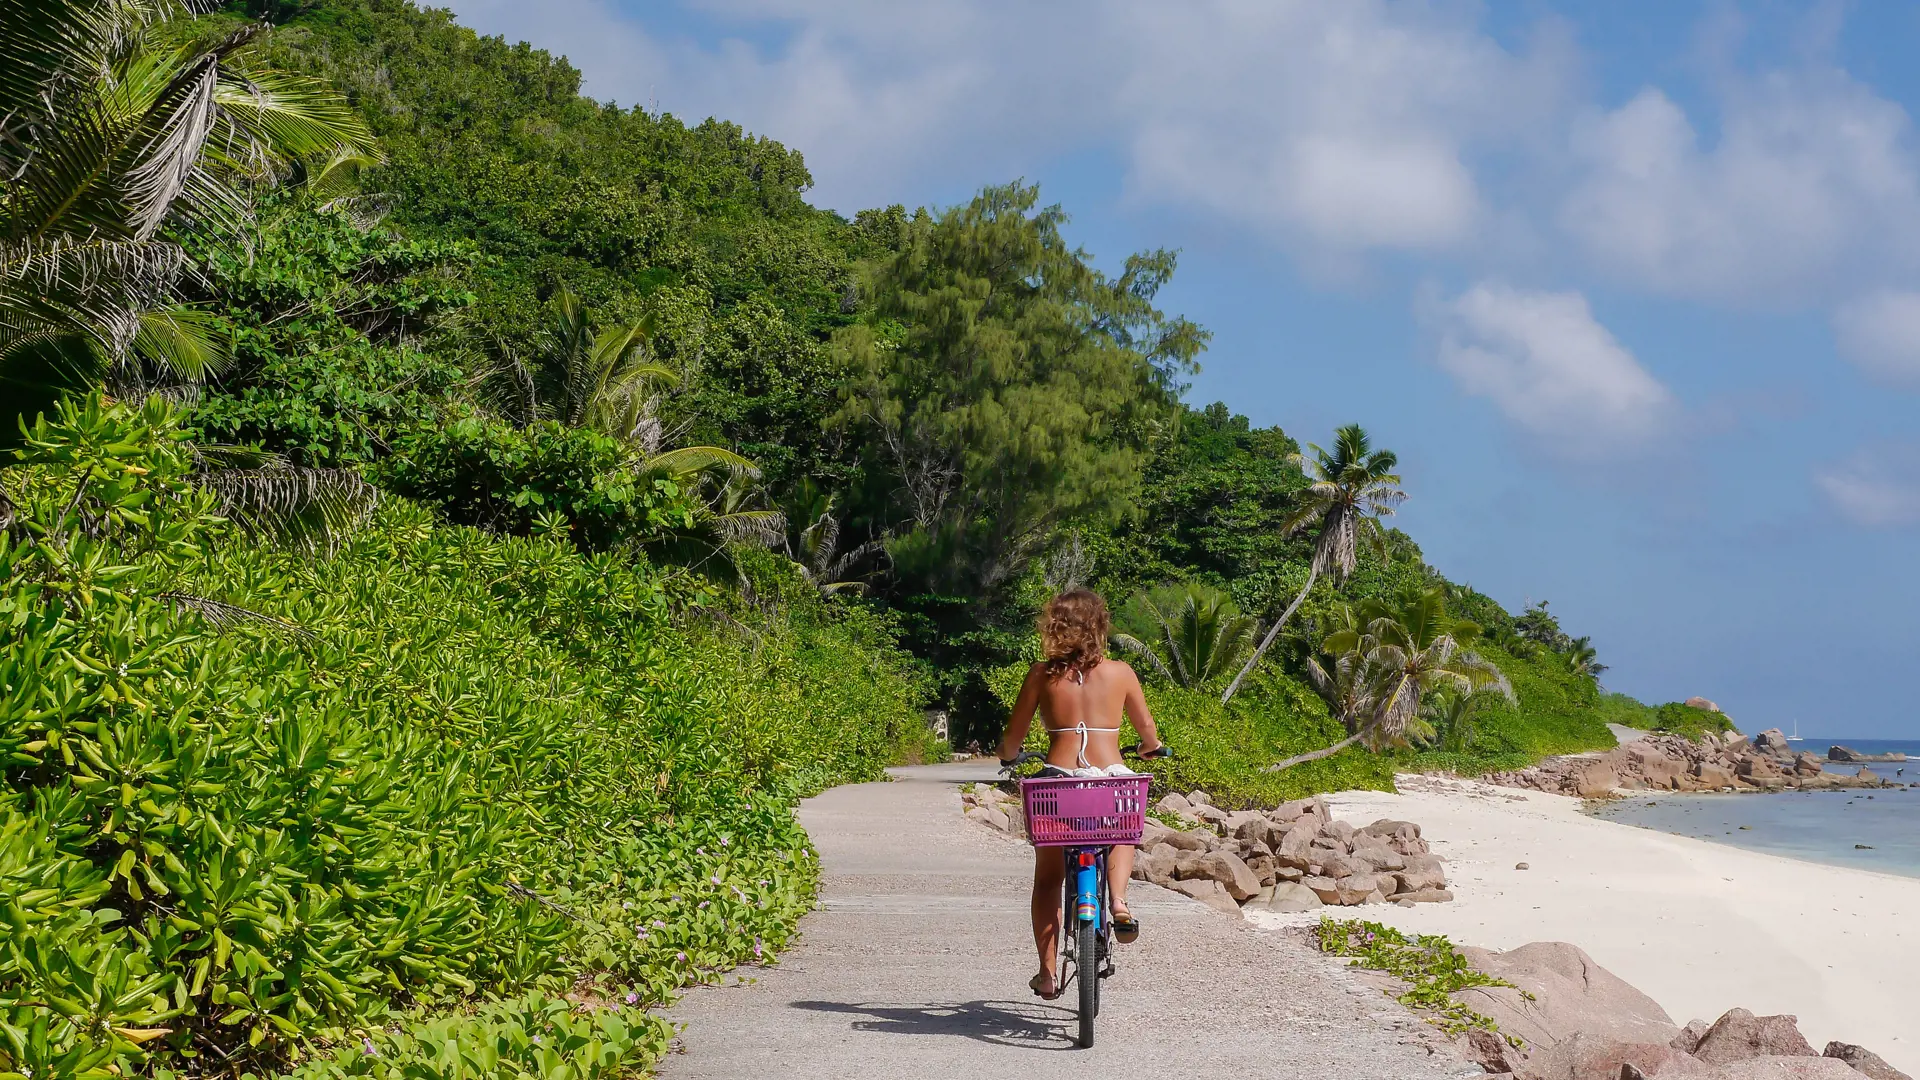 CYKELTUR - I kan let cykle rundt på øerne - for eksempel på La Digue, hvor I kan udforske strande, natur og hyggelige restauranter